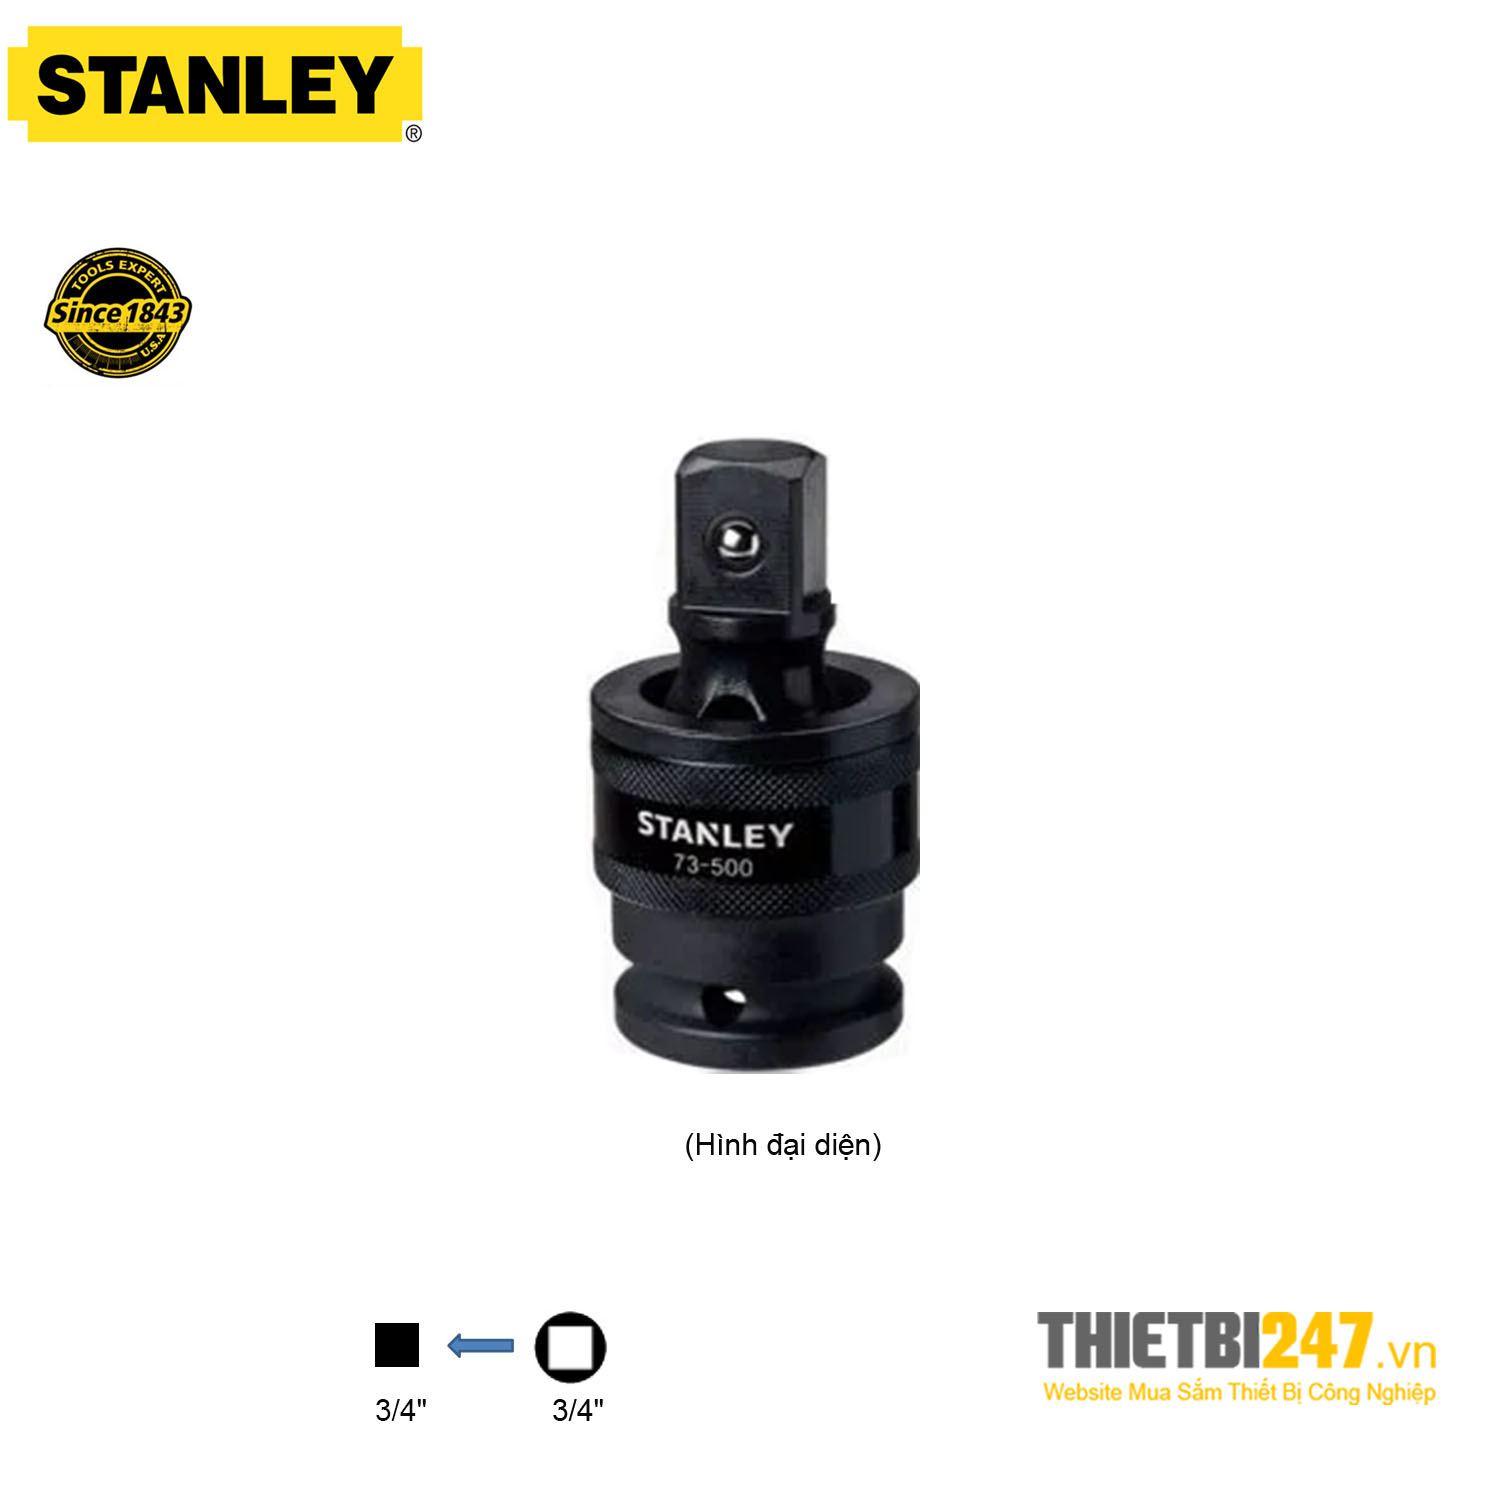 Đầu chuyển hướng khớp cầu 3/4" Stanley STMT73500-8B